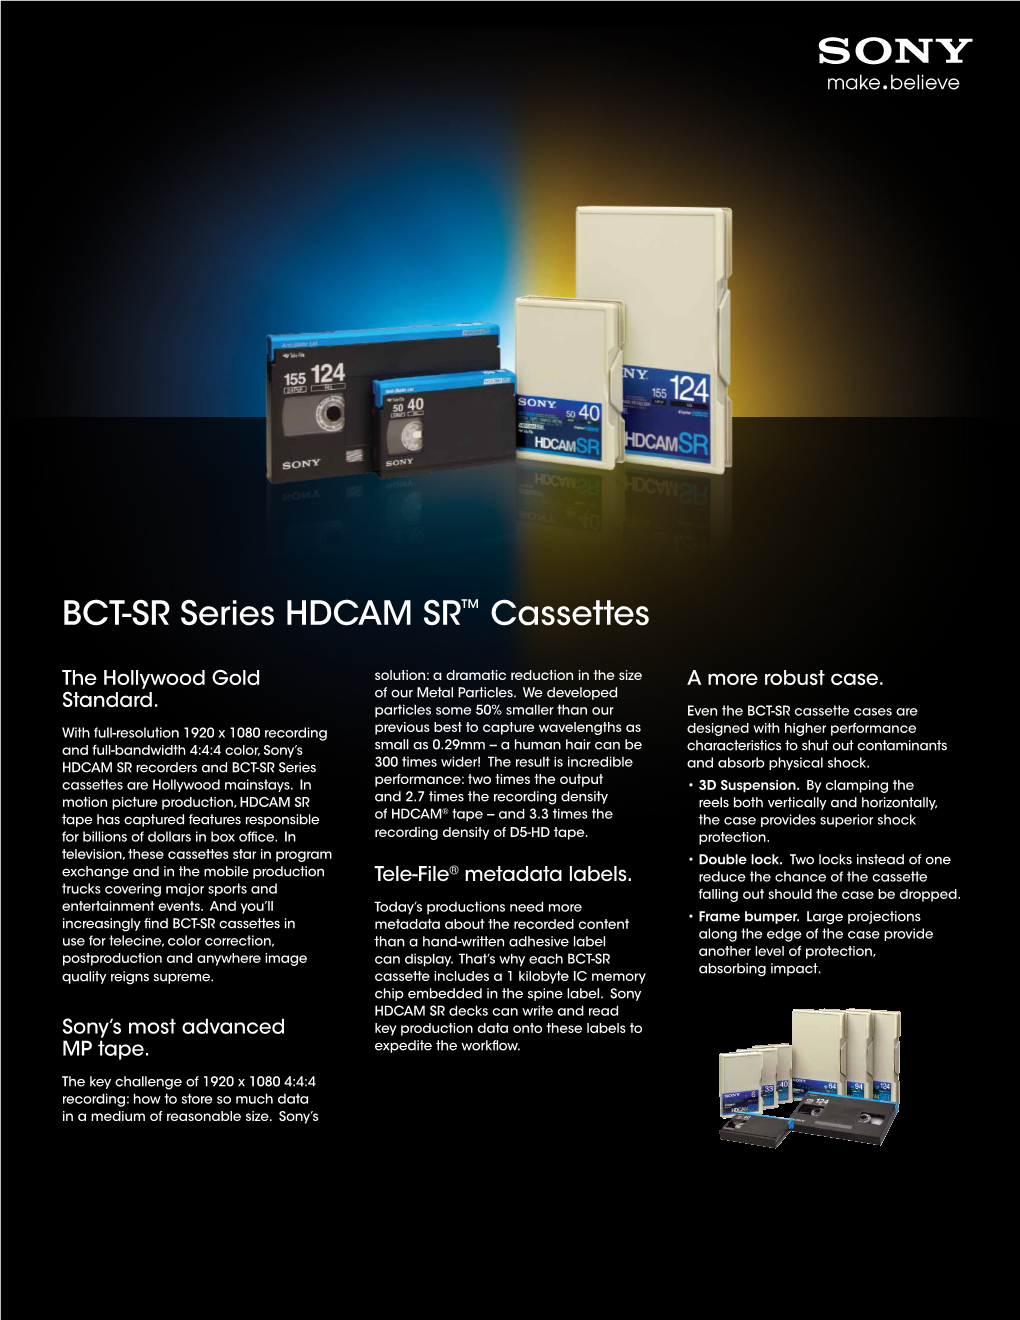 BCT-SR Series HDCAM SR™ Cassettes